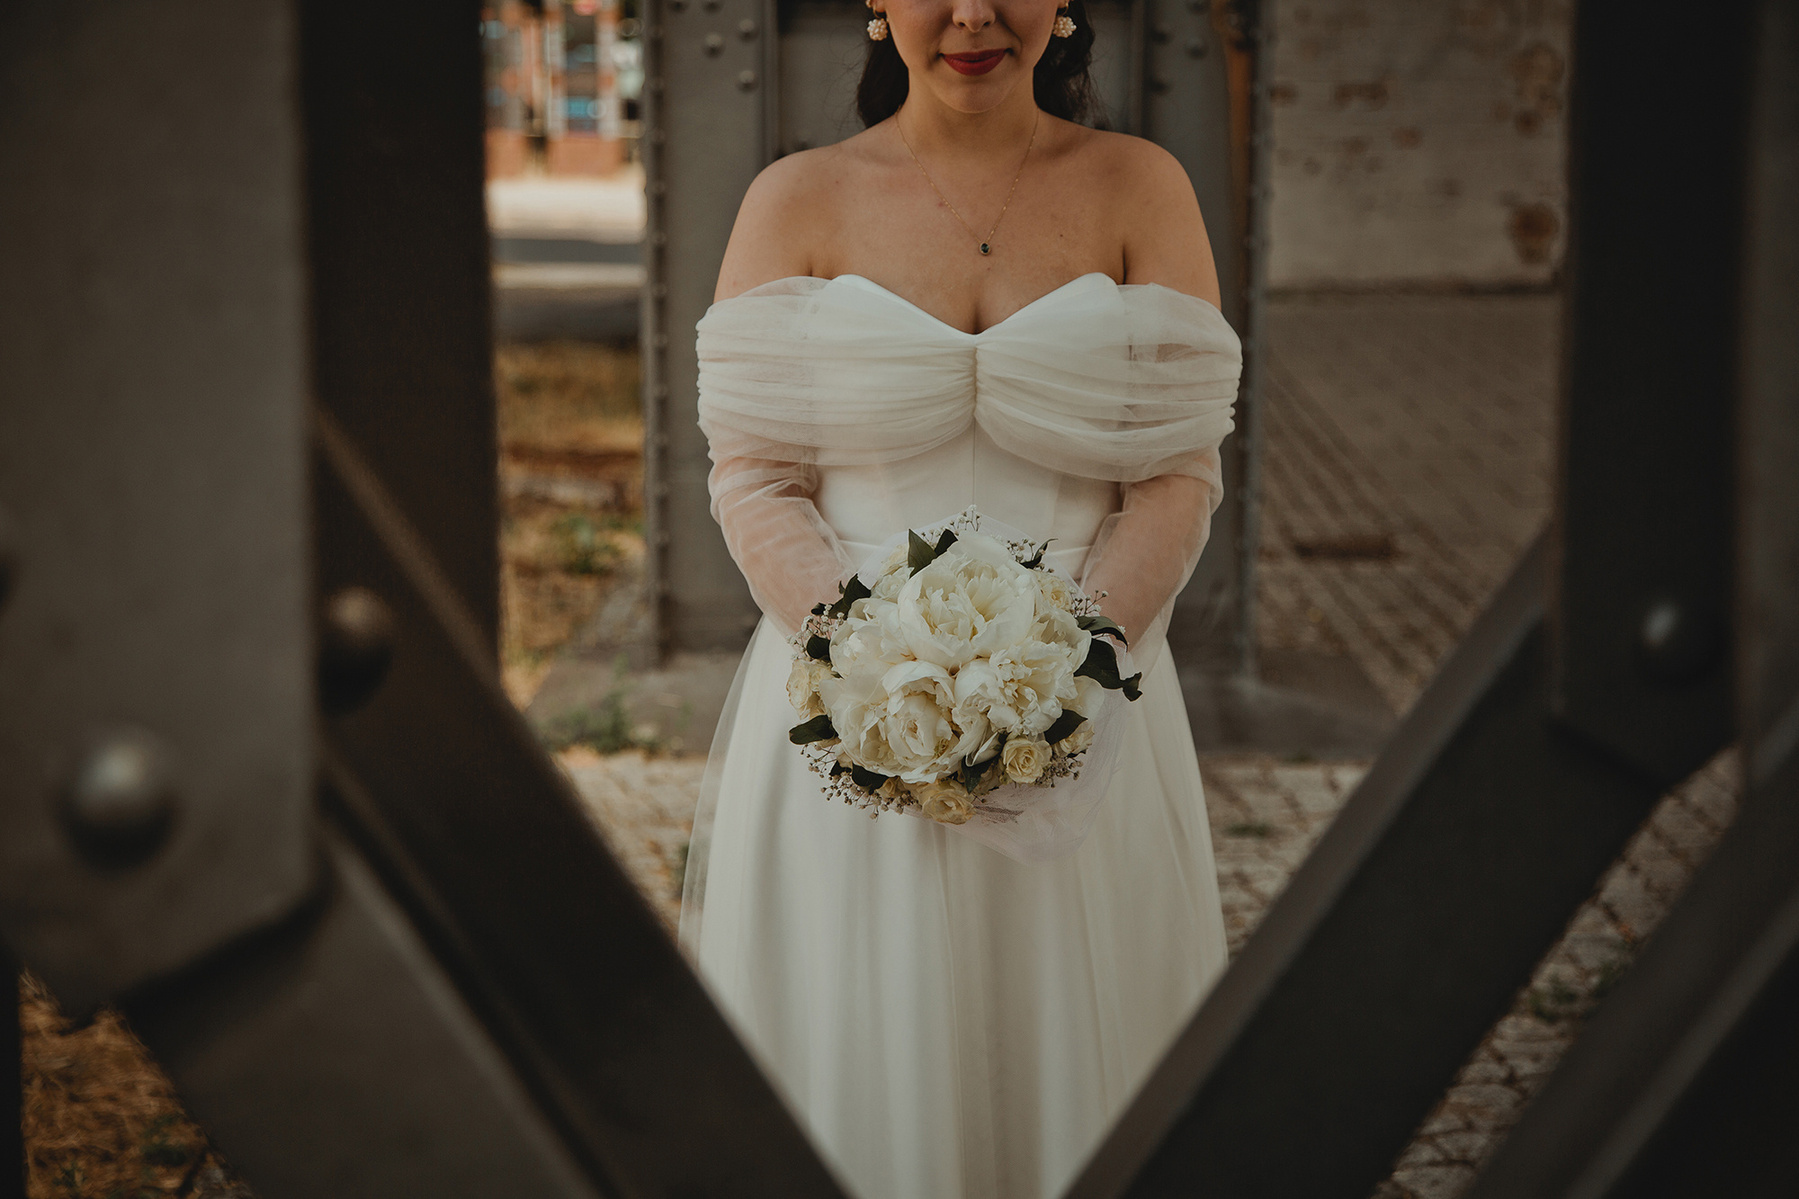 Detailaufnahme vom Brautstrauß mit weißen Pfingstrosen, gehalten von einer Braut im eleganten offshoulder Brautkleid. 